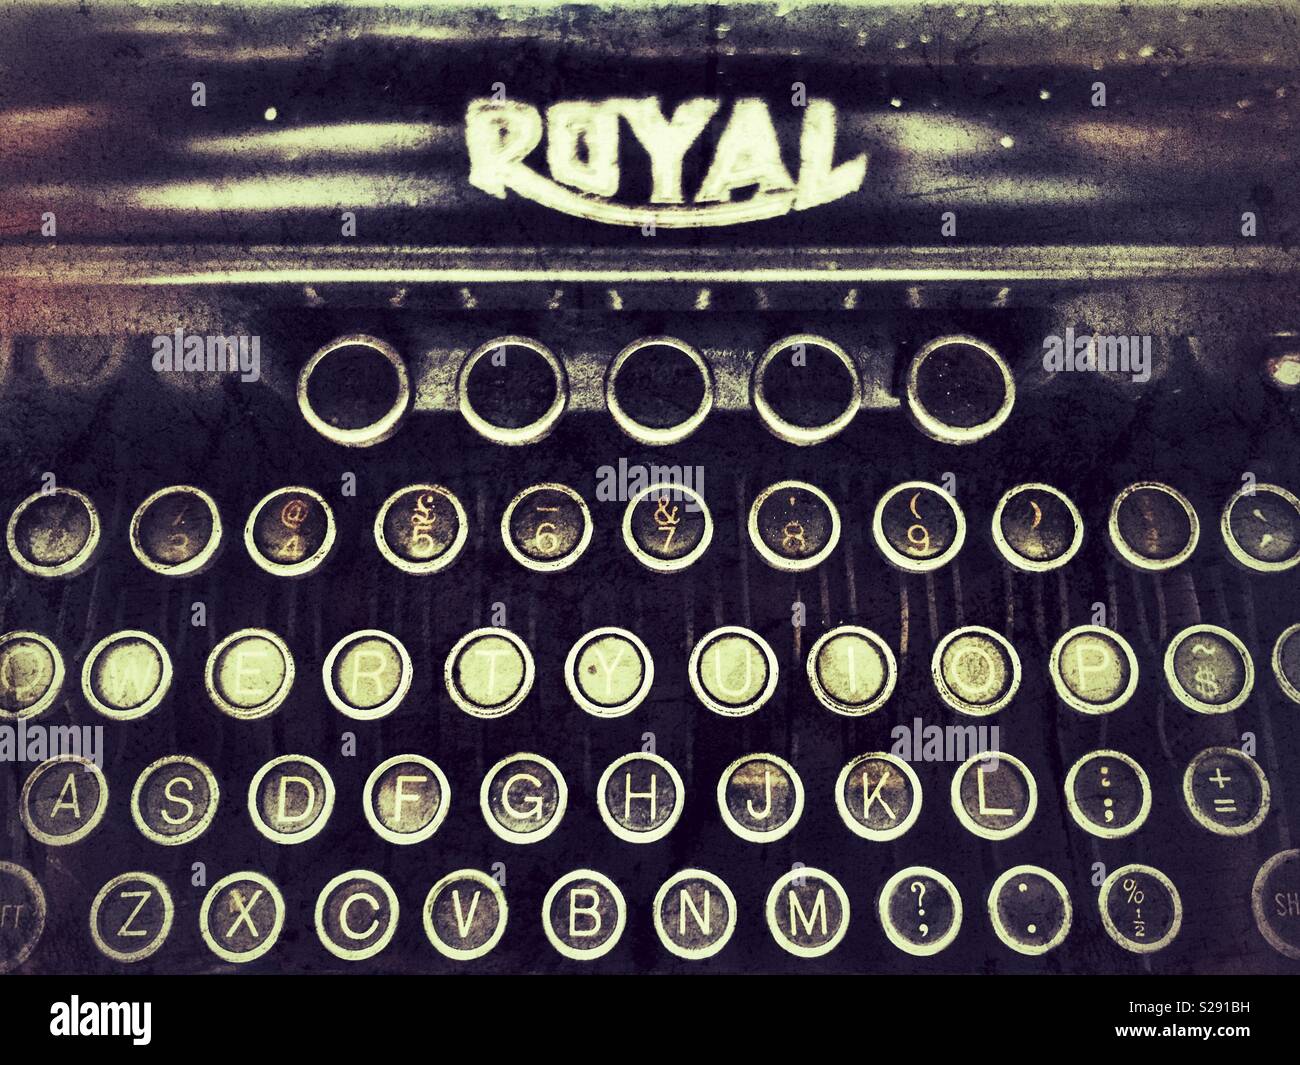 Royal typewriter Stock Photo